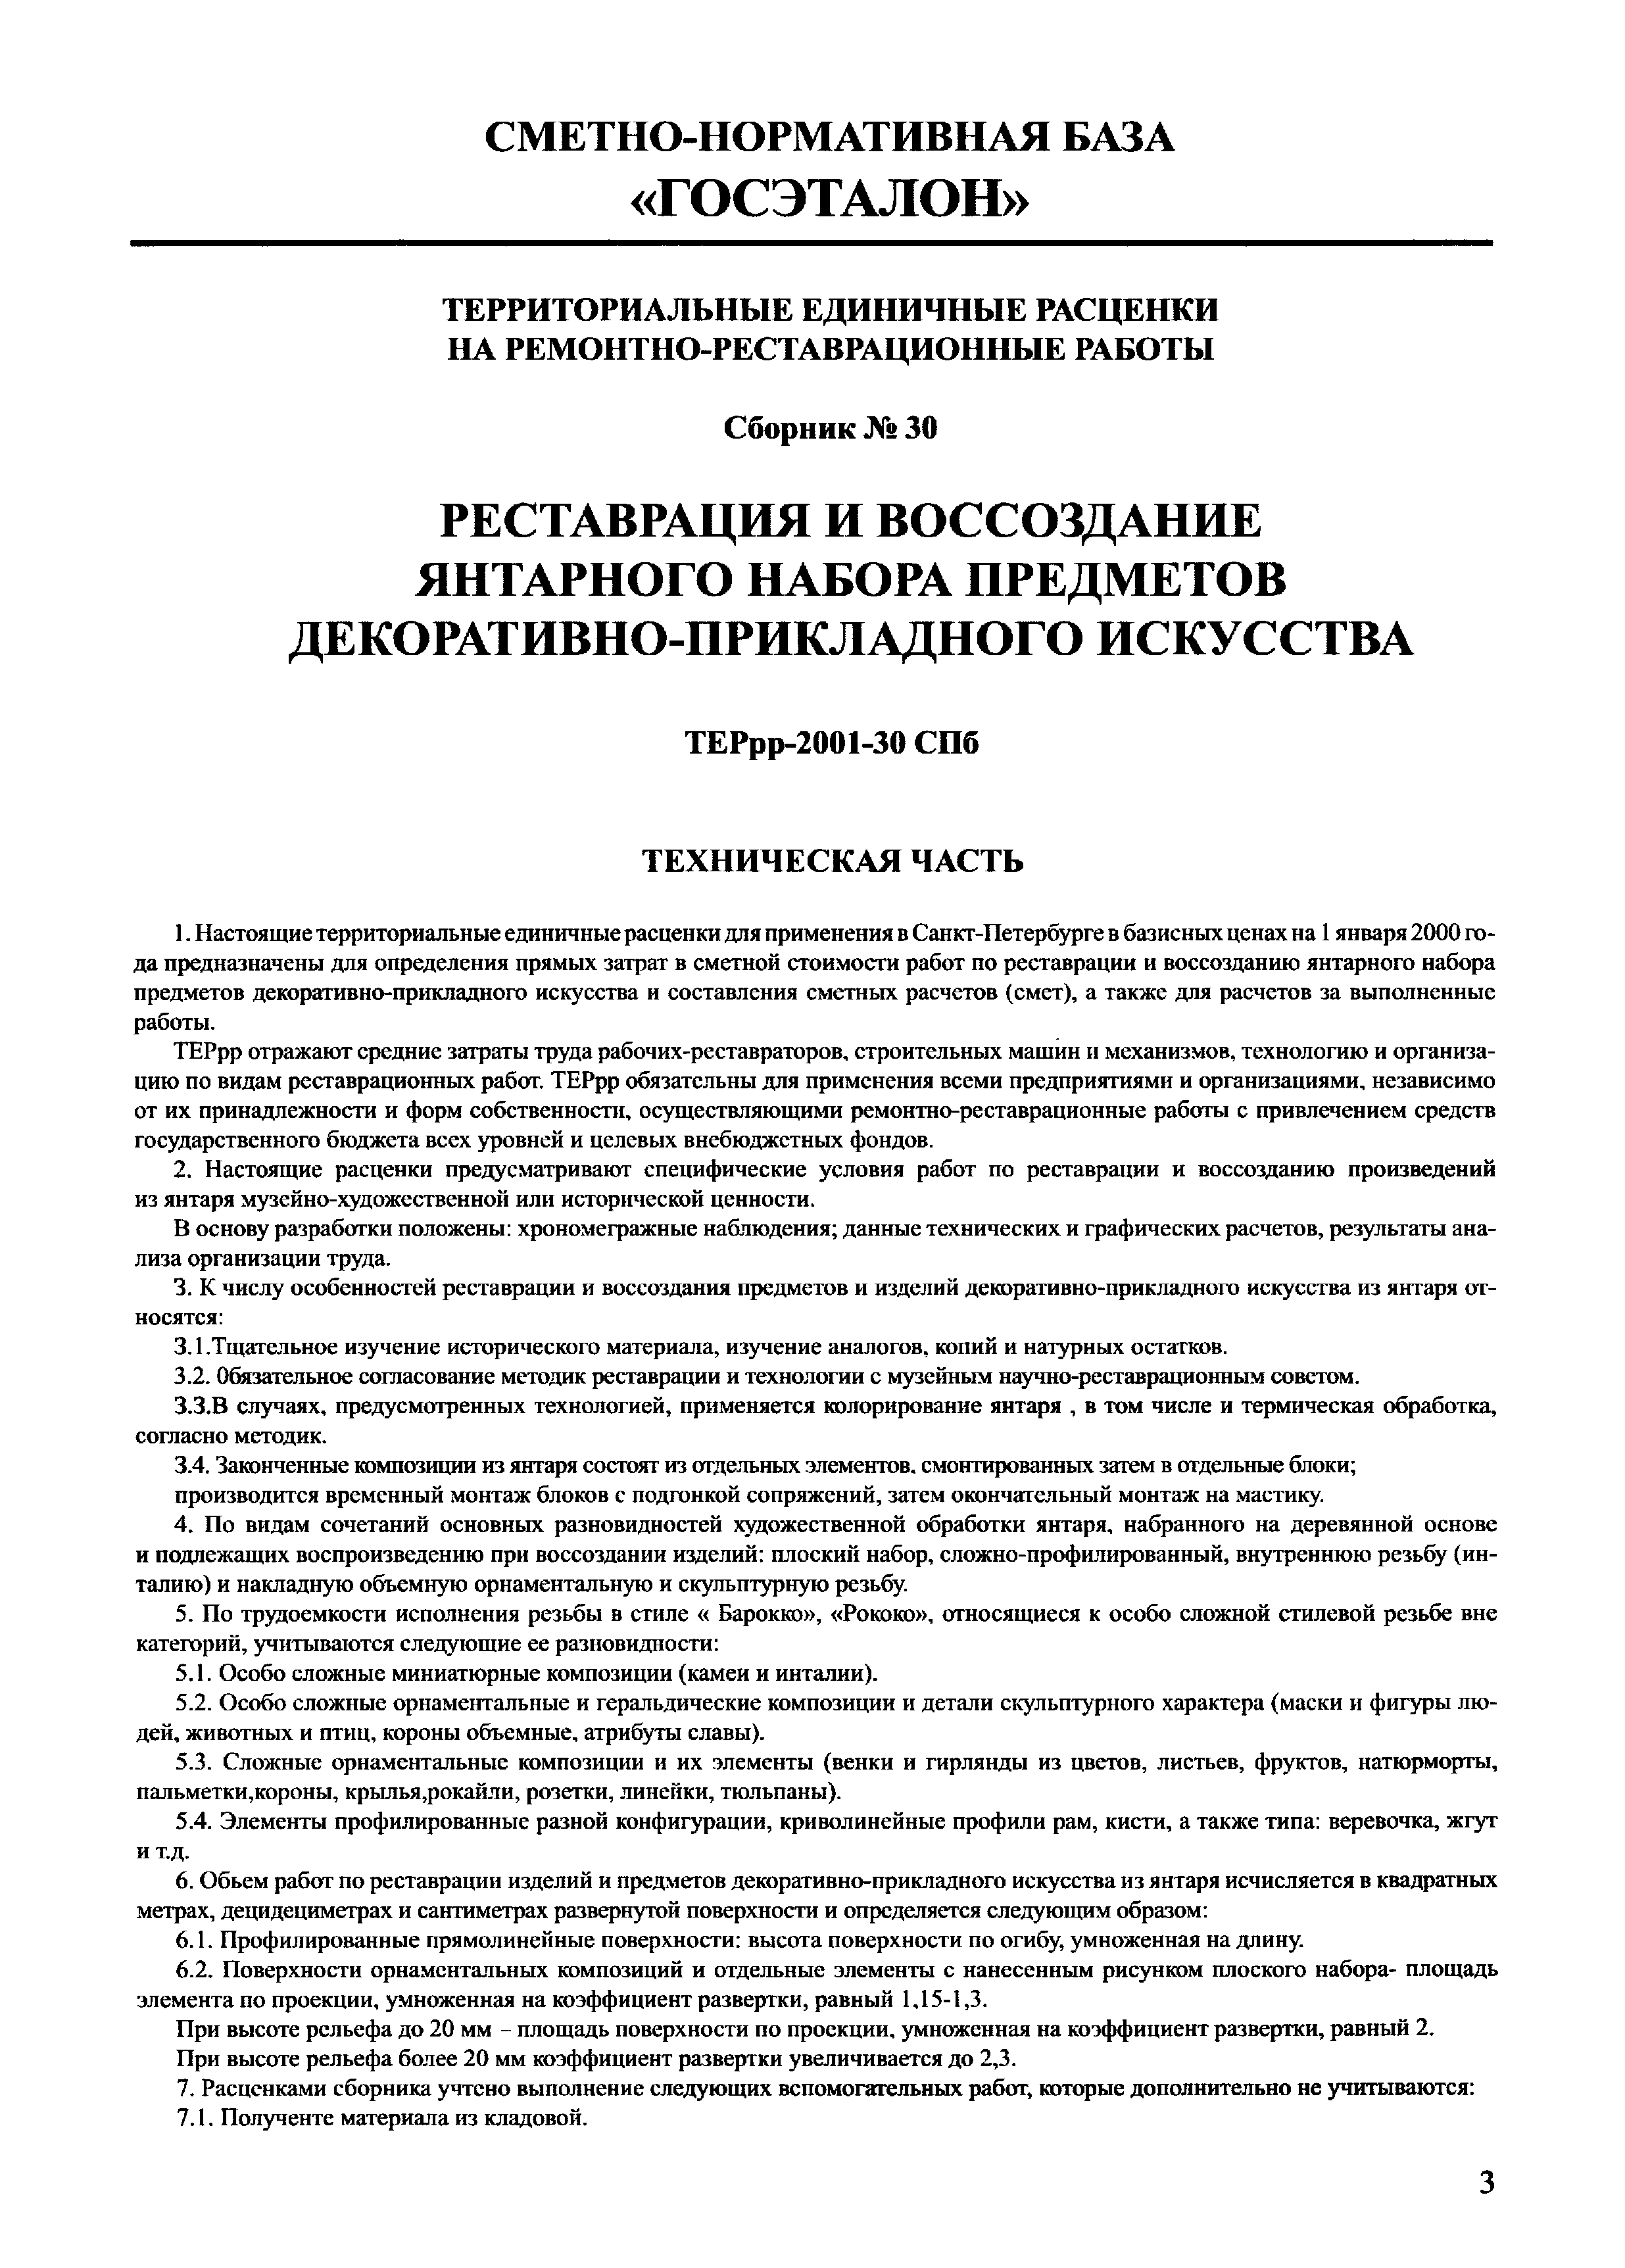 ТЕРрр 2001-30 СПб